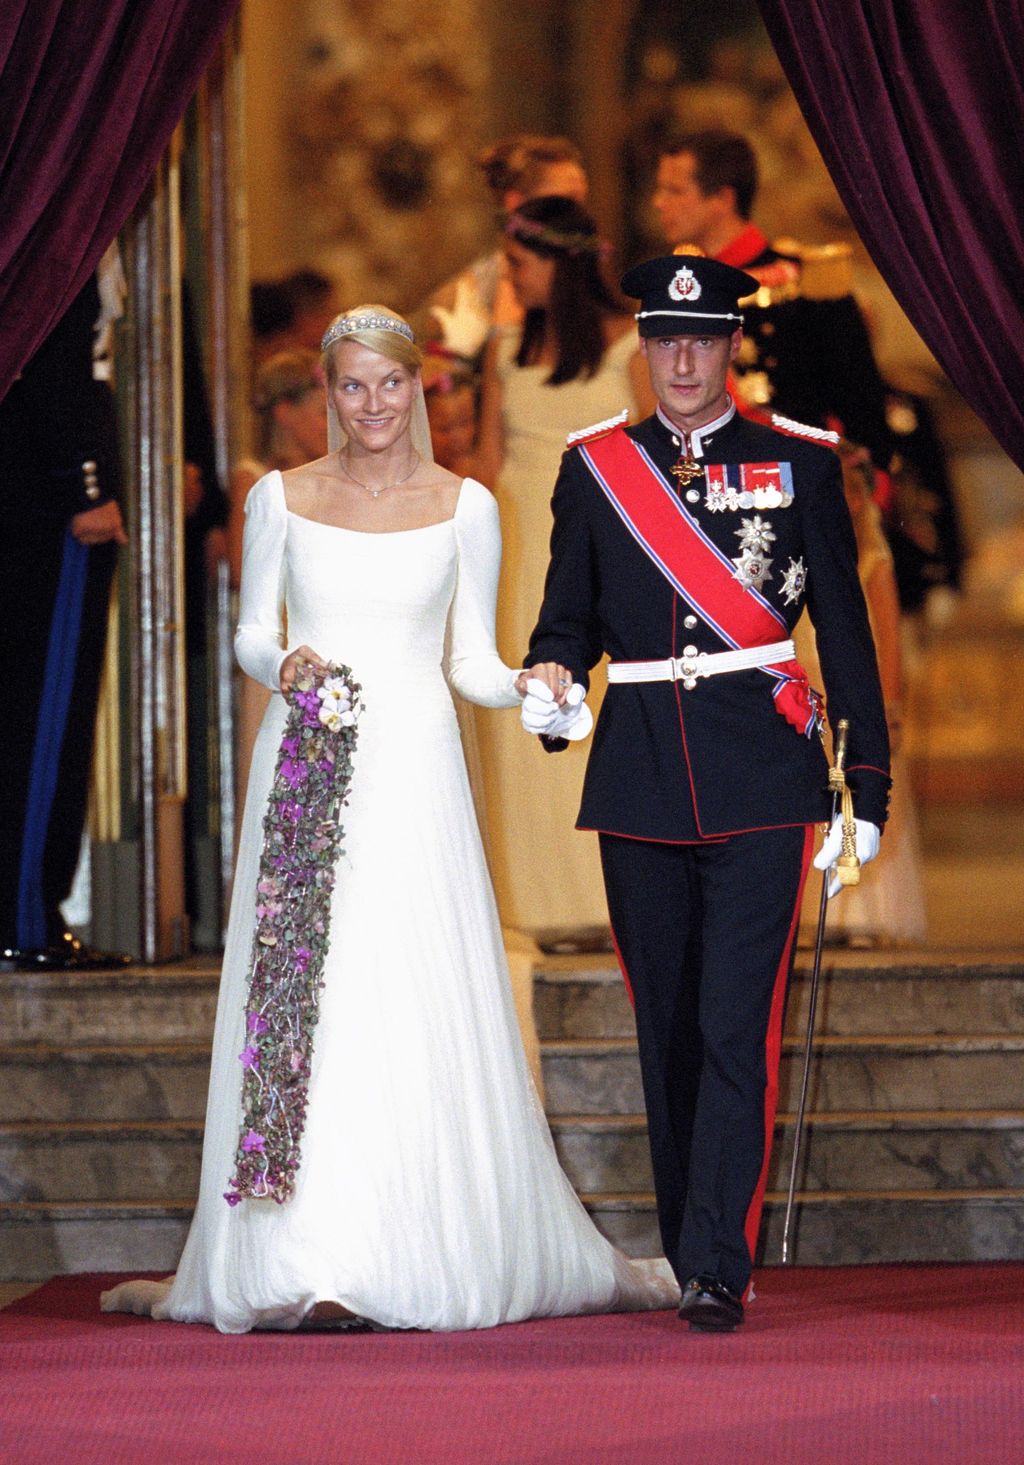 The Wedding Of Crown Prince Haakon Of Norway & Mette-Marit, 2001